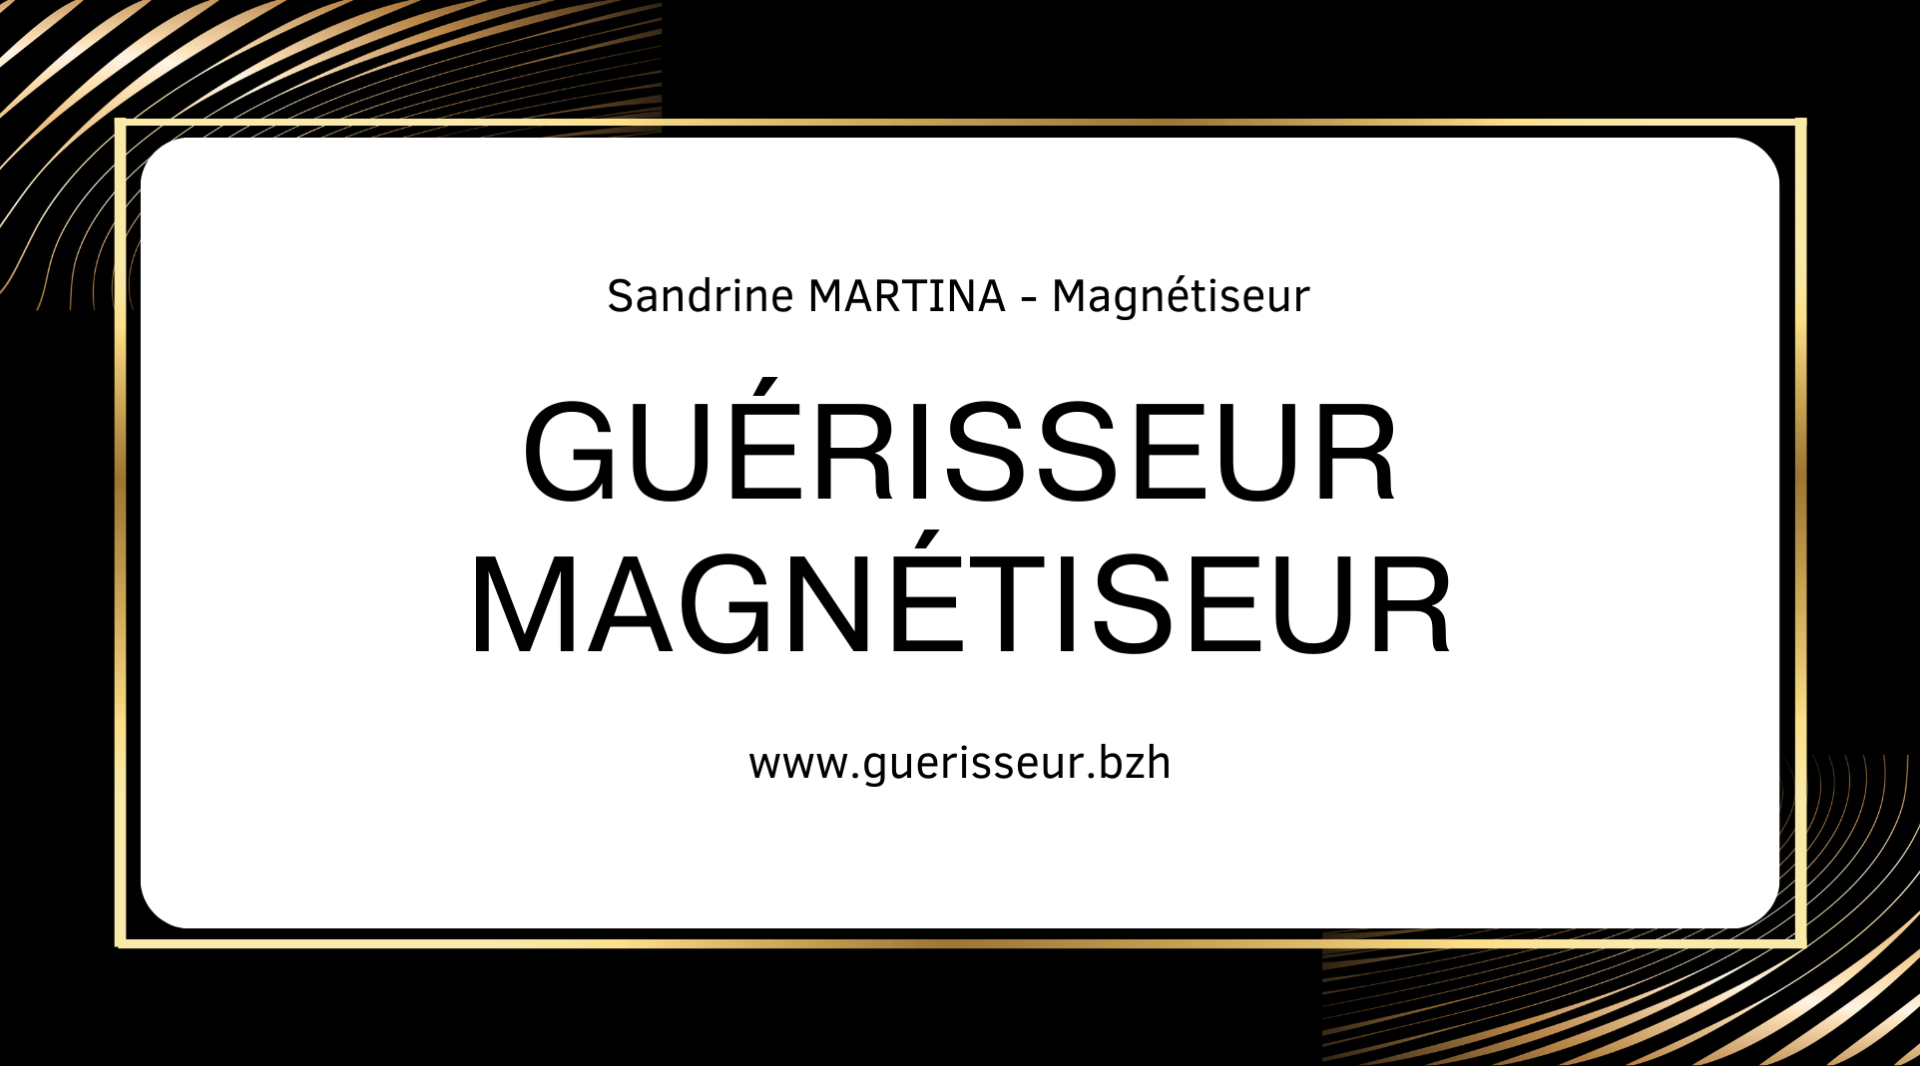 Guerisseur magnetiseur guingamp sandrine martina 01 ph 1